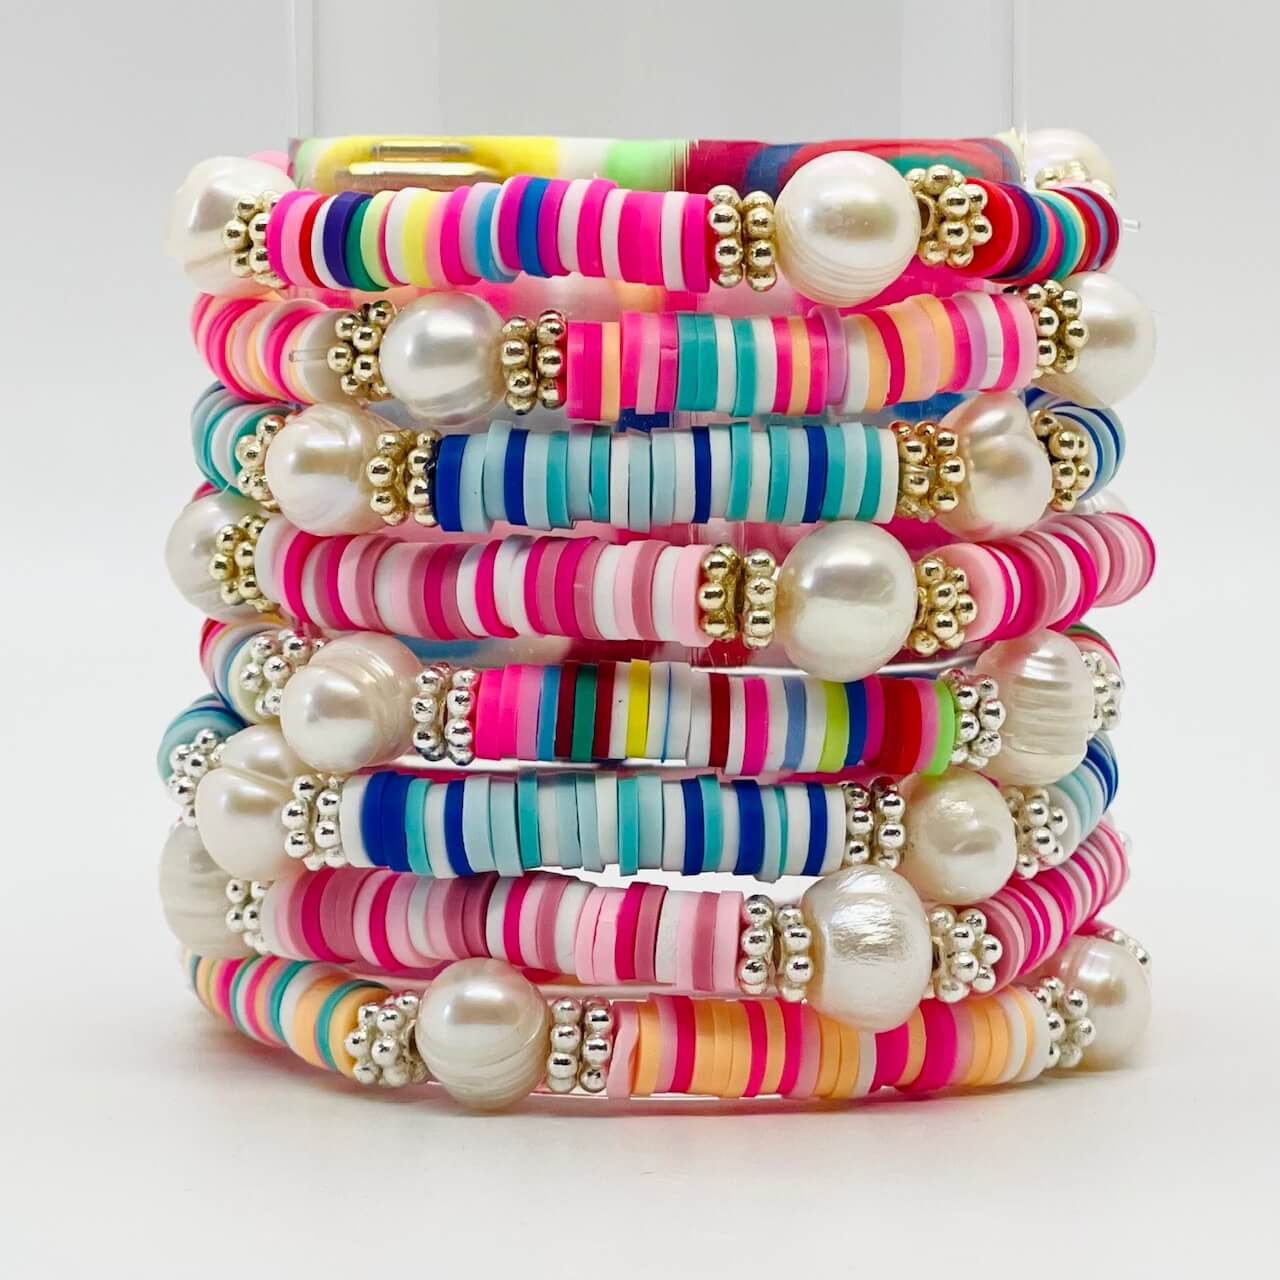 Pastel Party Stack Bracelet Kit - Makes up to 10 Bracelets